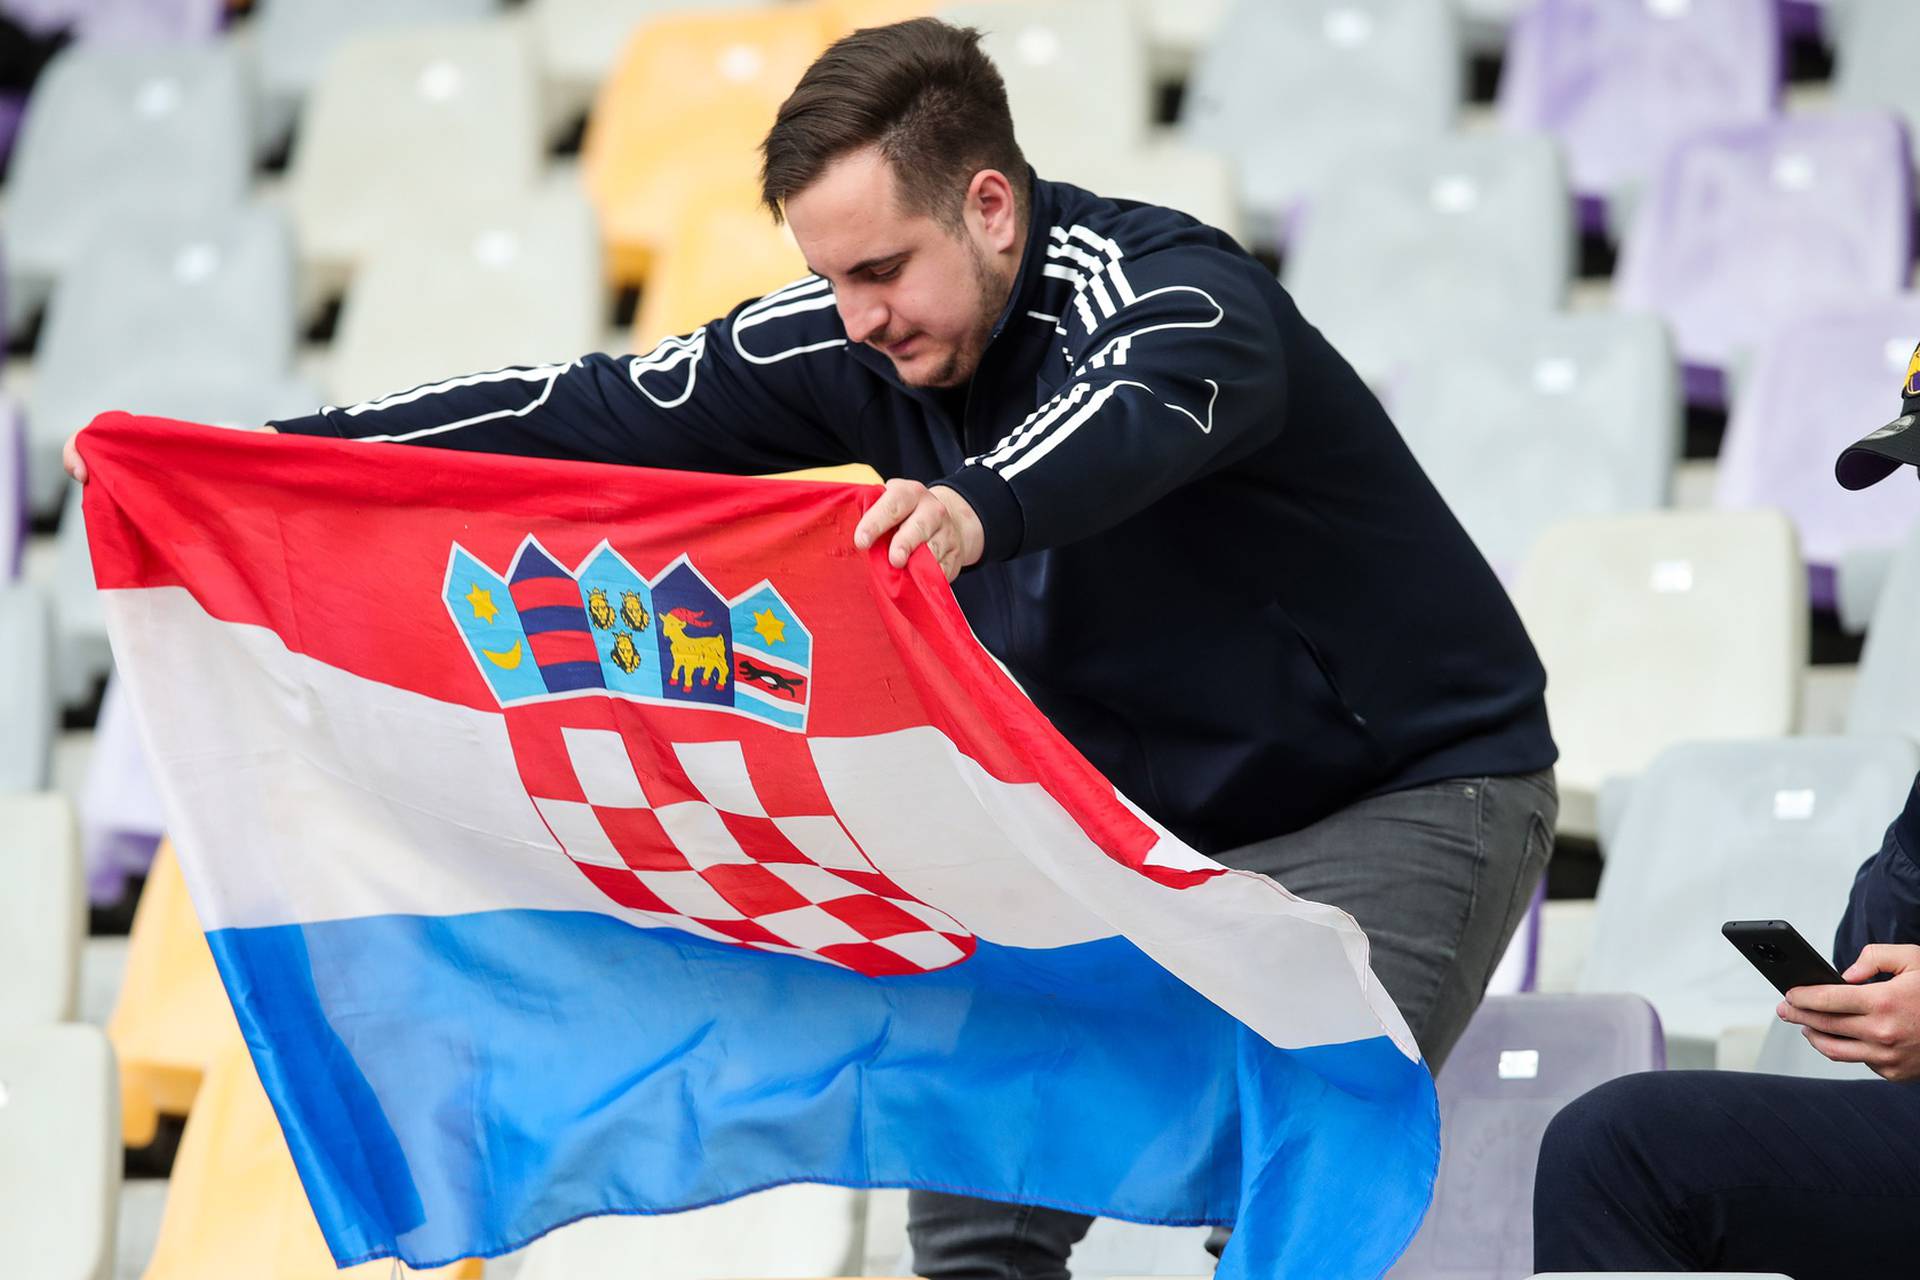 Zagrijavanje nogometaša uoči početka utakmice Španjolska - Hrvatska